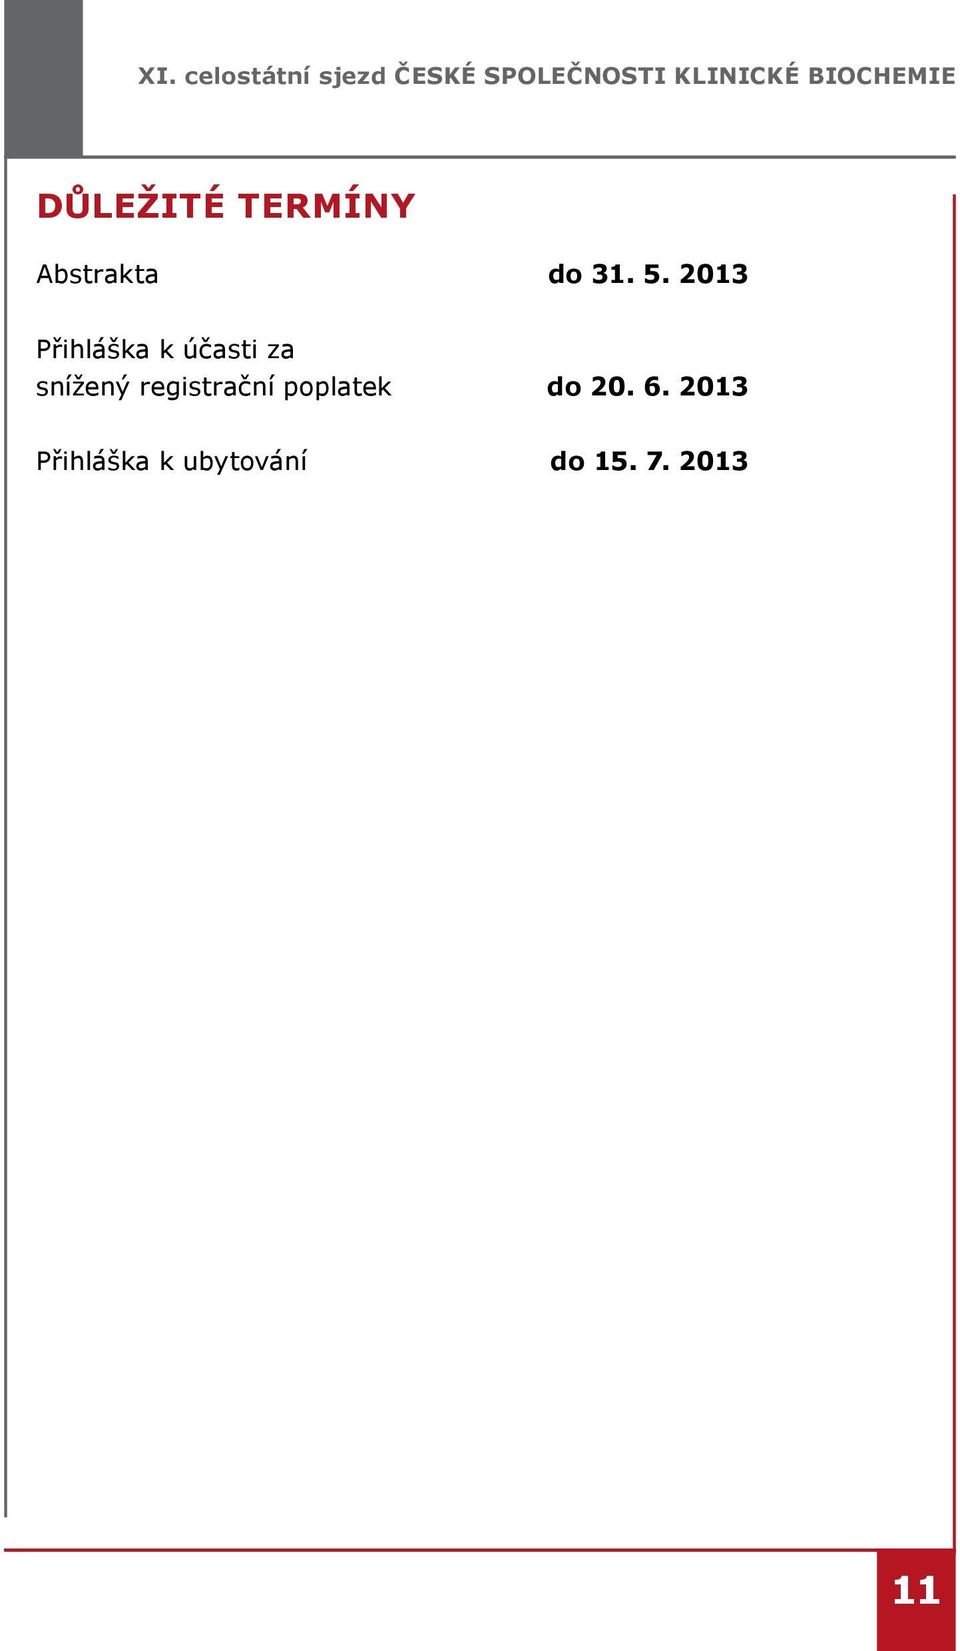 2013 Přihláška k účasti za snížený registrační